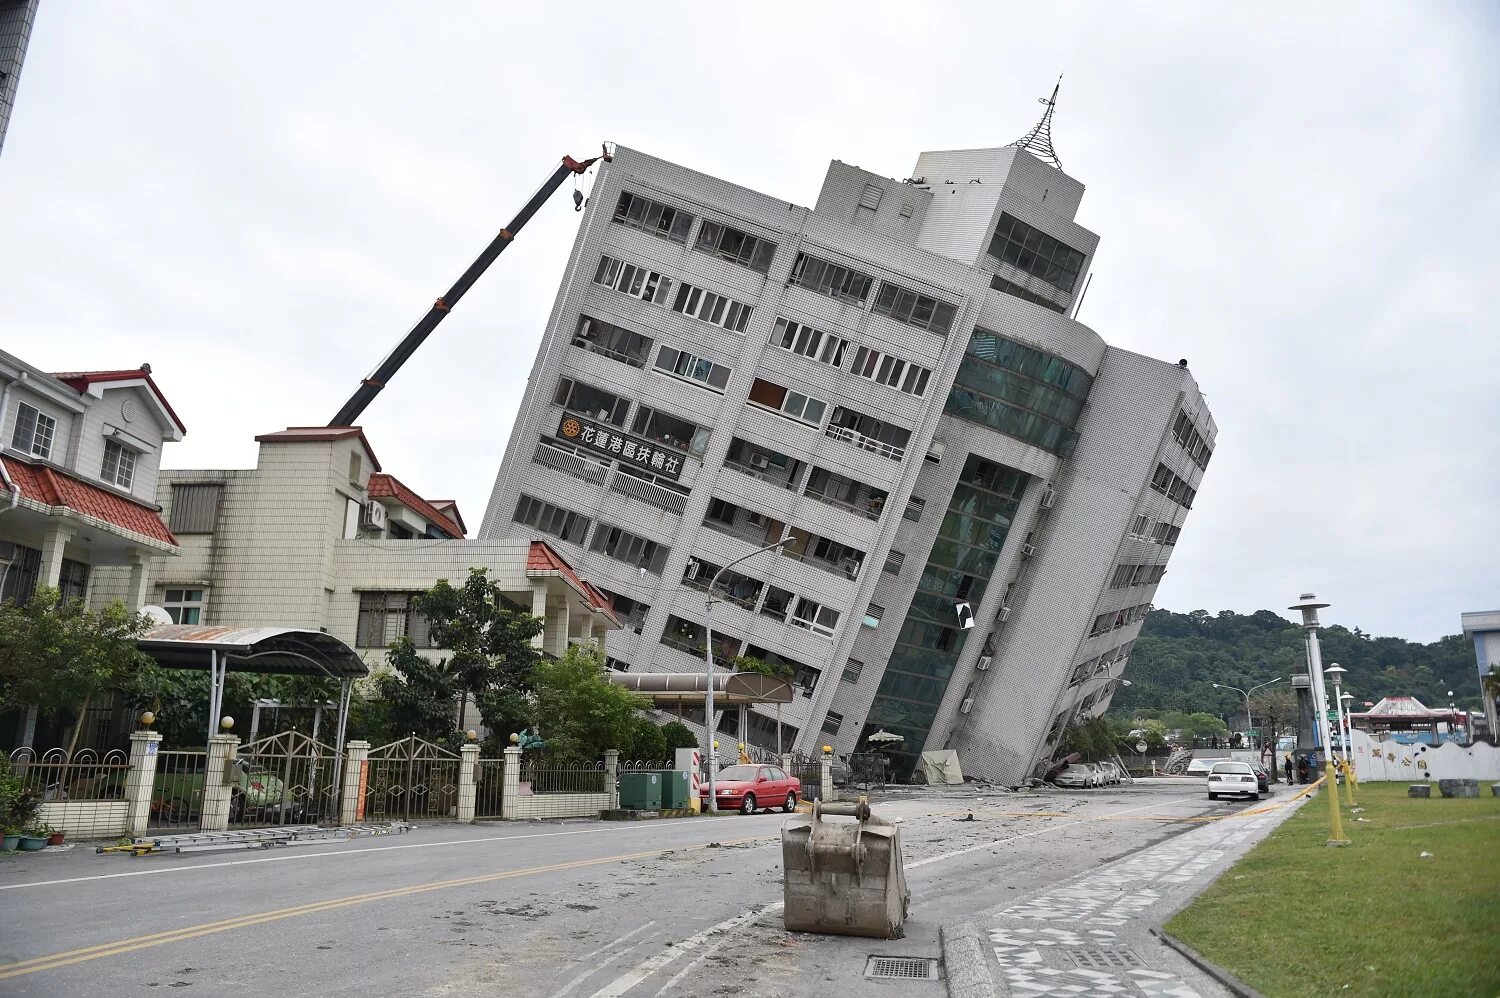 Тайвань китай землетрясение. Гостиница Маршал Тайвань землетрясение. Землетрясение на Тайване 1999. Землетрясение Хуалянь. Гостиница Маршал Тайвань.